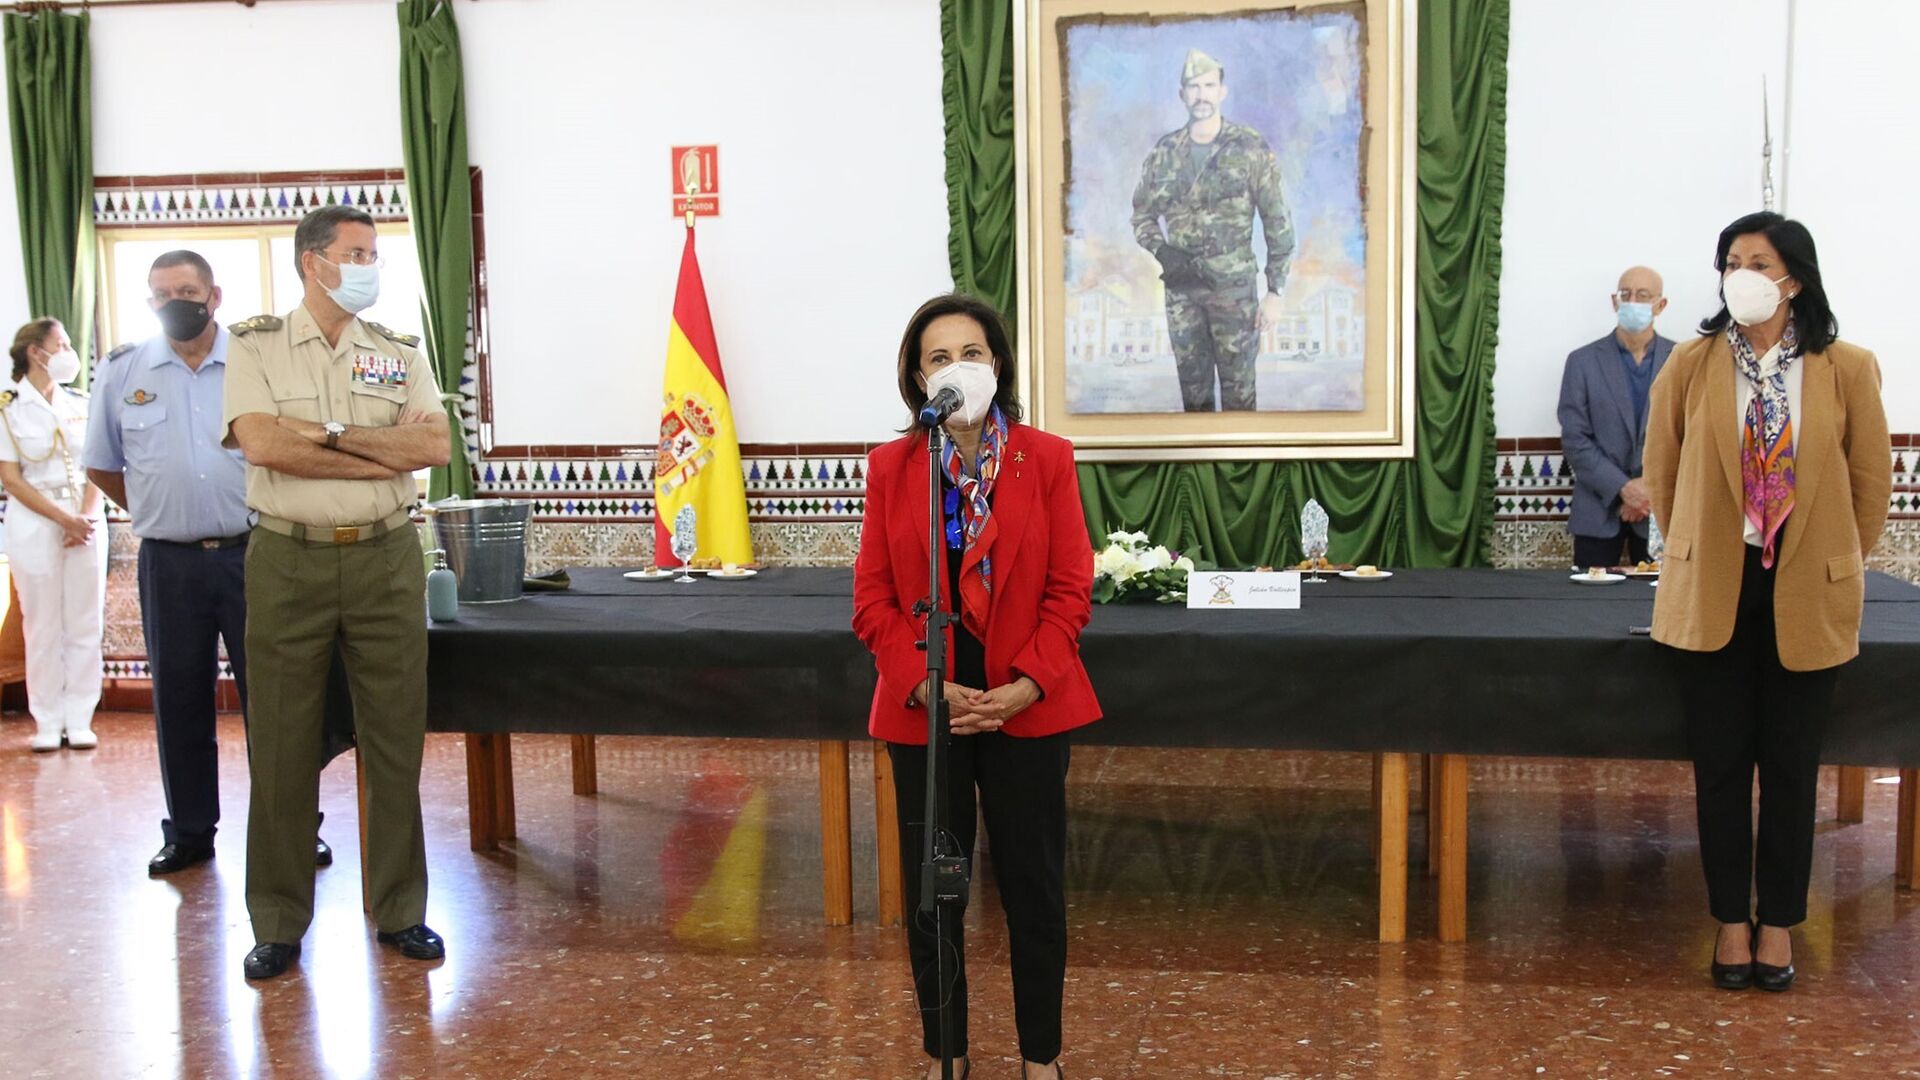 Fotogalería de la ministra de Defensa, Margarita Robles, a La Legión